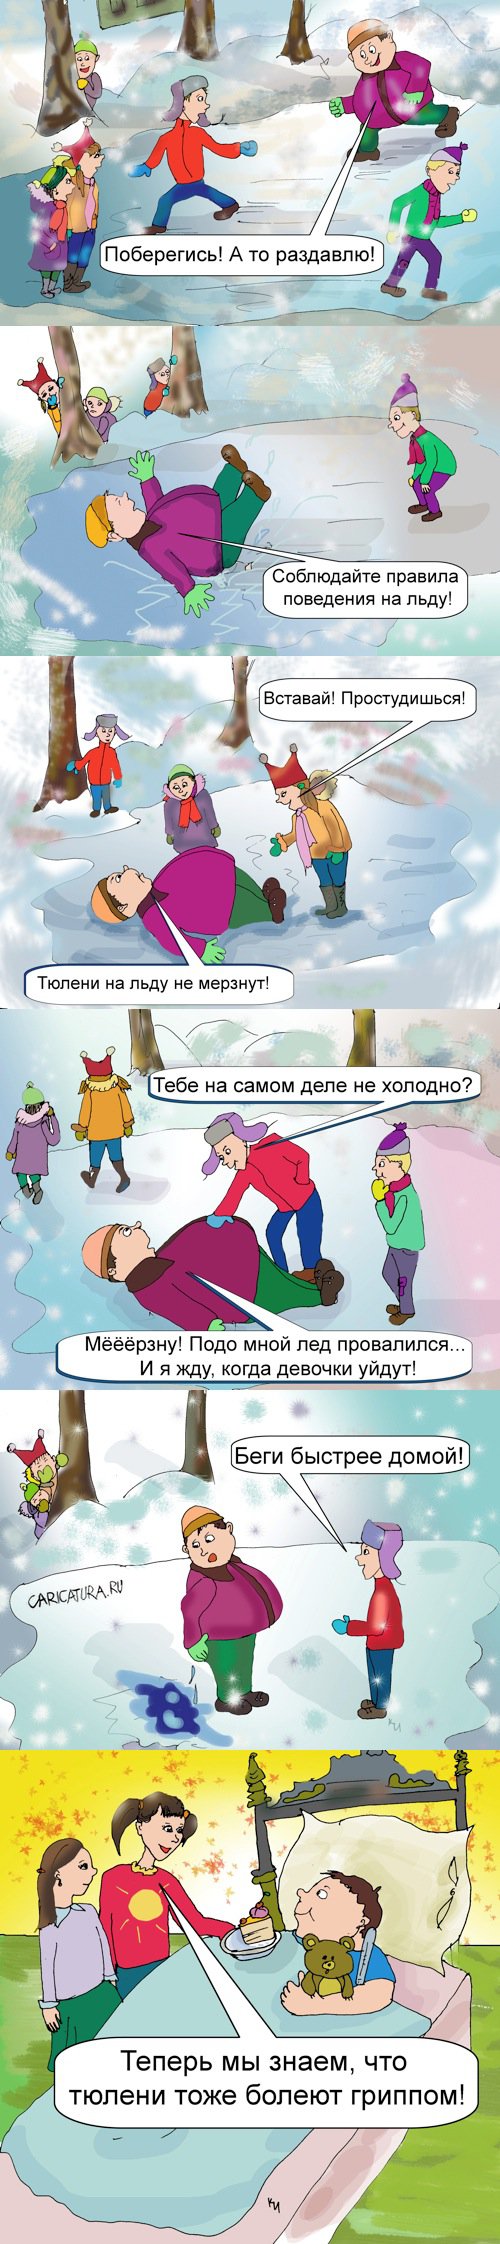 Комикс "Толстый мальчик на льду", Ирина Кран